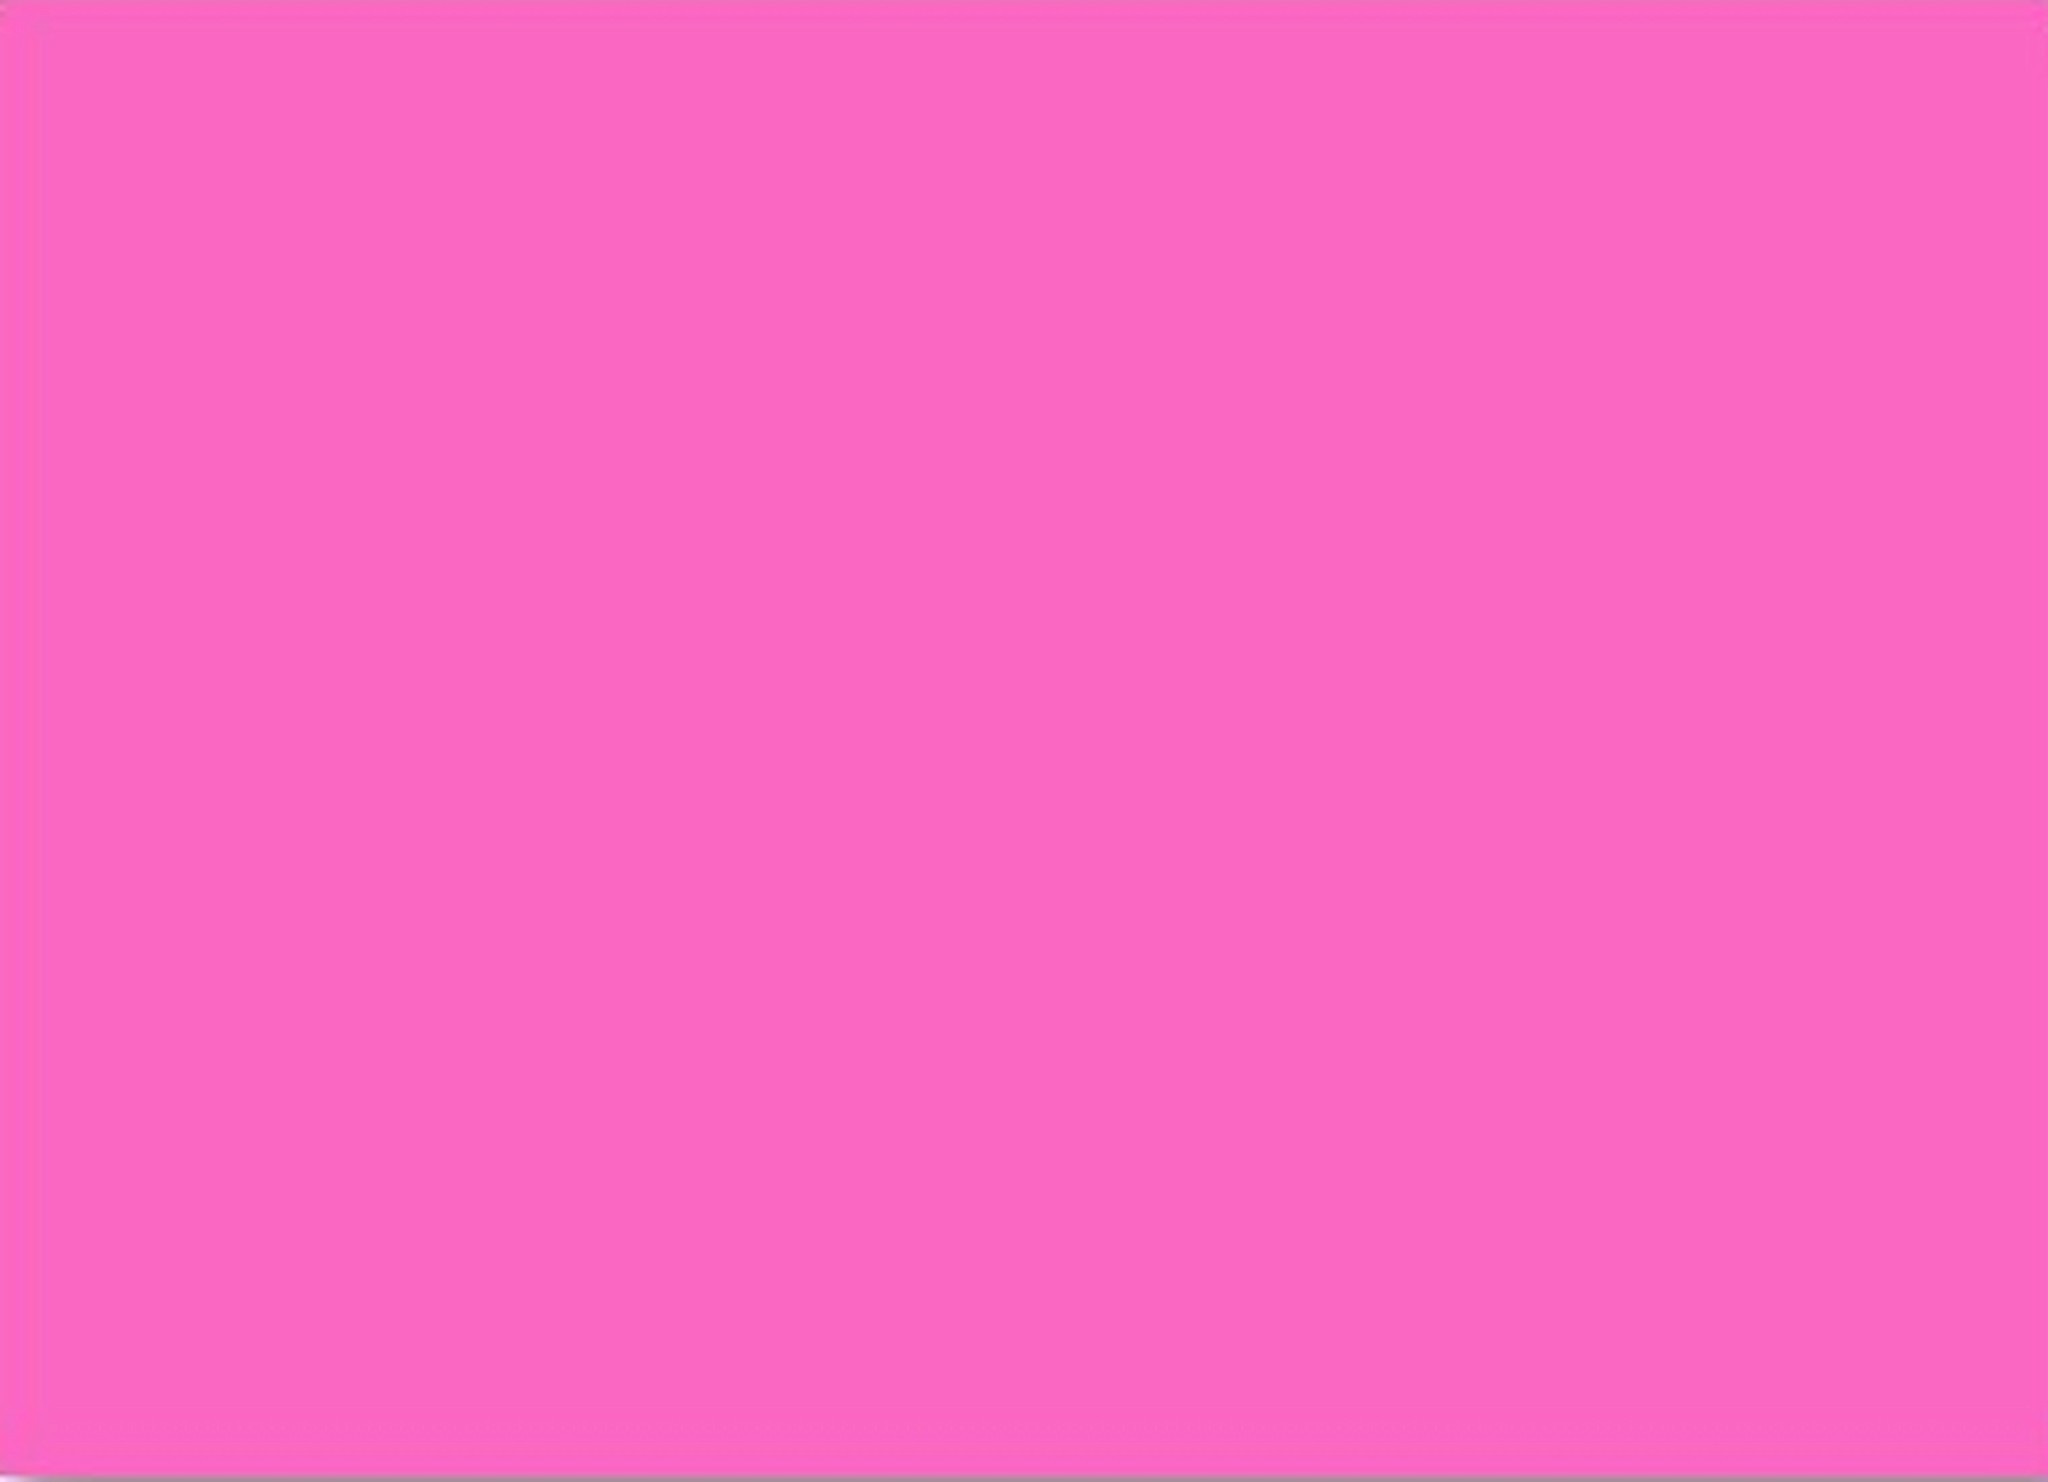 Màu hồng đậm luôn là một sự lựa chọn hoàn hảo cho các bạn nữ, vì sự tươi sáng, quyến rũ và mạnh mẽ của nó. Nếu bạn đang tìm kiếm một hình nền đầy sức cuốn hút và nổi bật, thì hãy xem hình ảnh liên quan đến hình nền màu hồng đậm trong bài viết này.